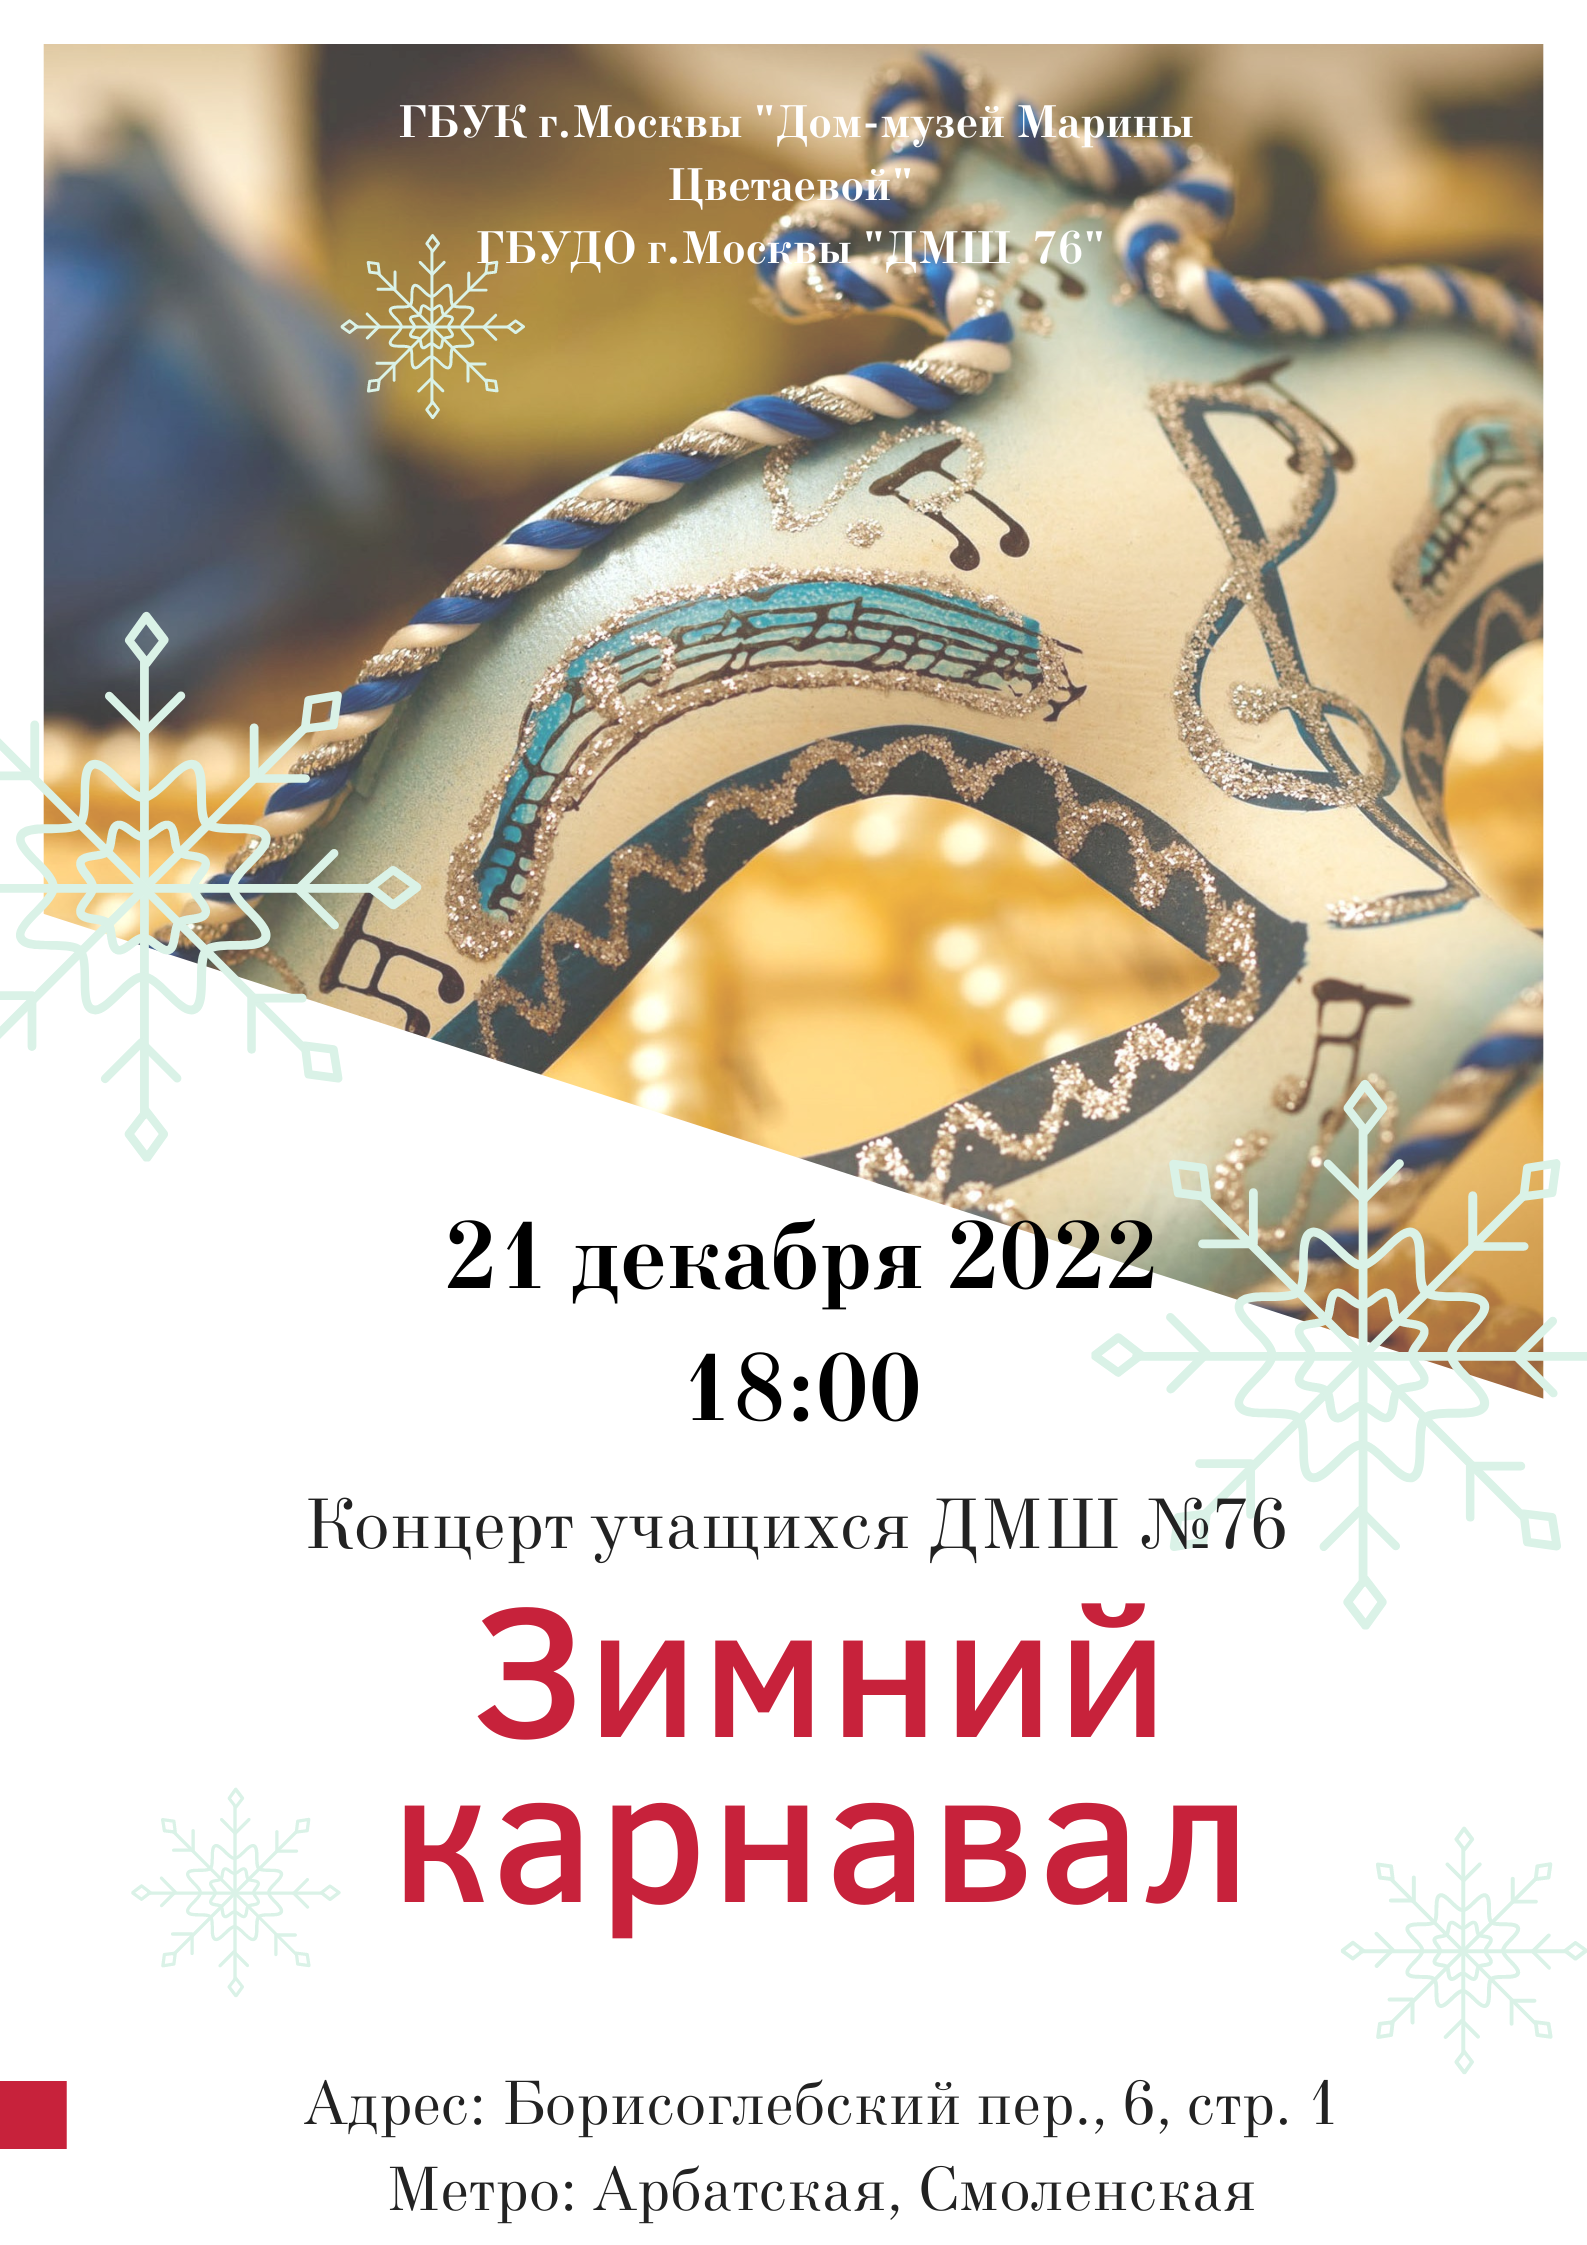 Иллюстрация: «Зимний карнавал». Концерт учащихся ДМШ № 76